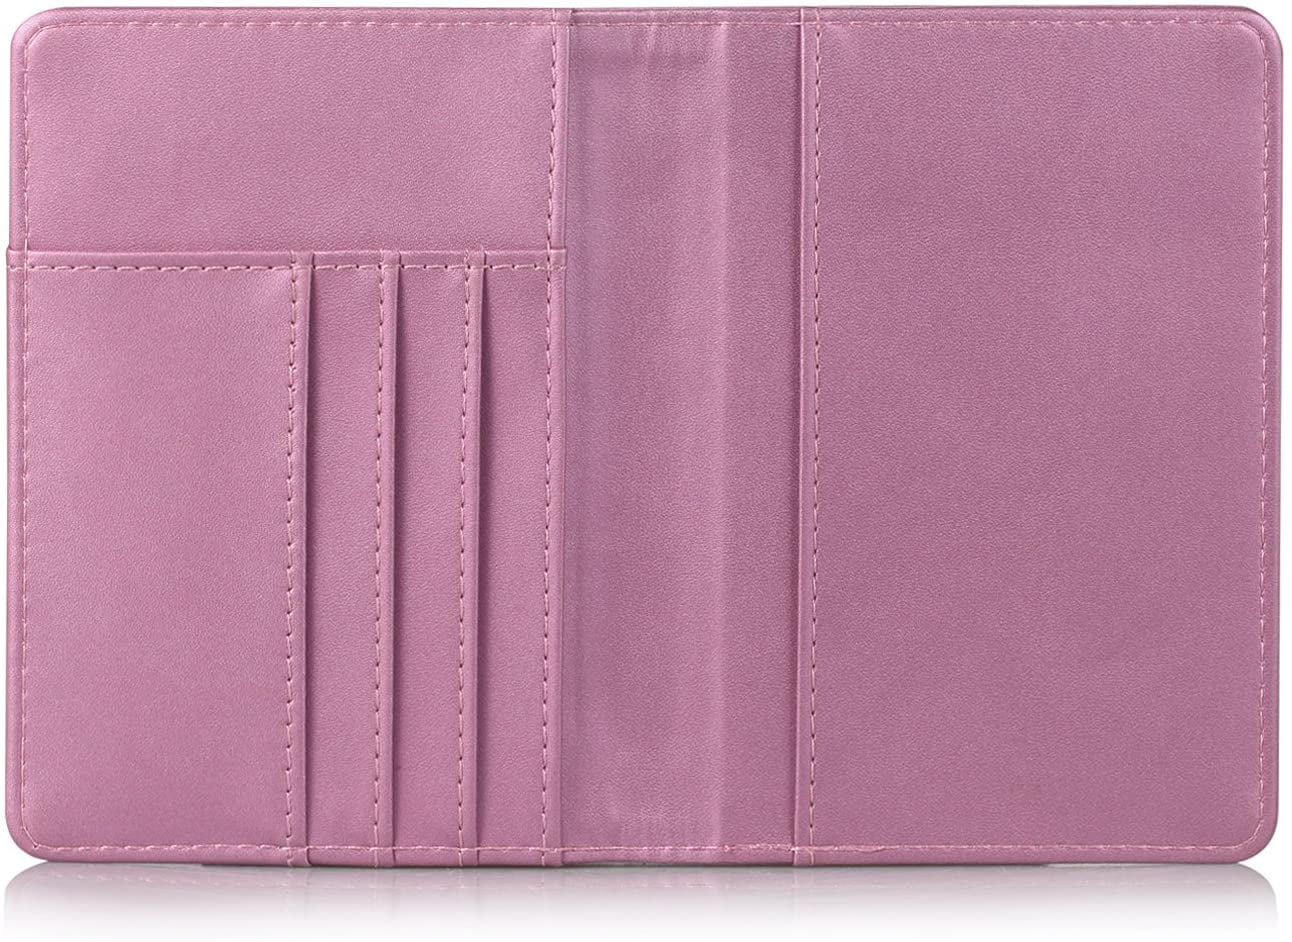 EpicGadget Passport Holder Travel Wallet RFID Blocking Case Cover -  Minimalist Premium PU Leather Passport Wallet Holder, Passport, ID, Card  and Boarding Pass Holder Travel Organizer (Pink) 